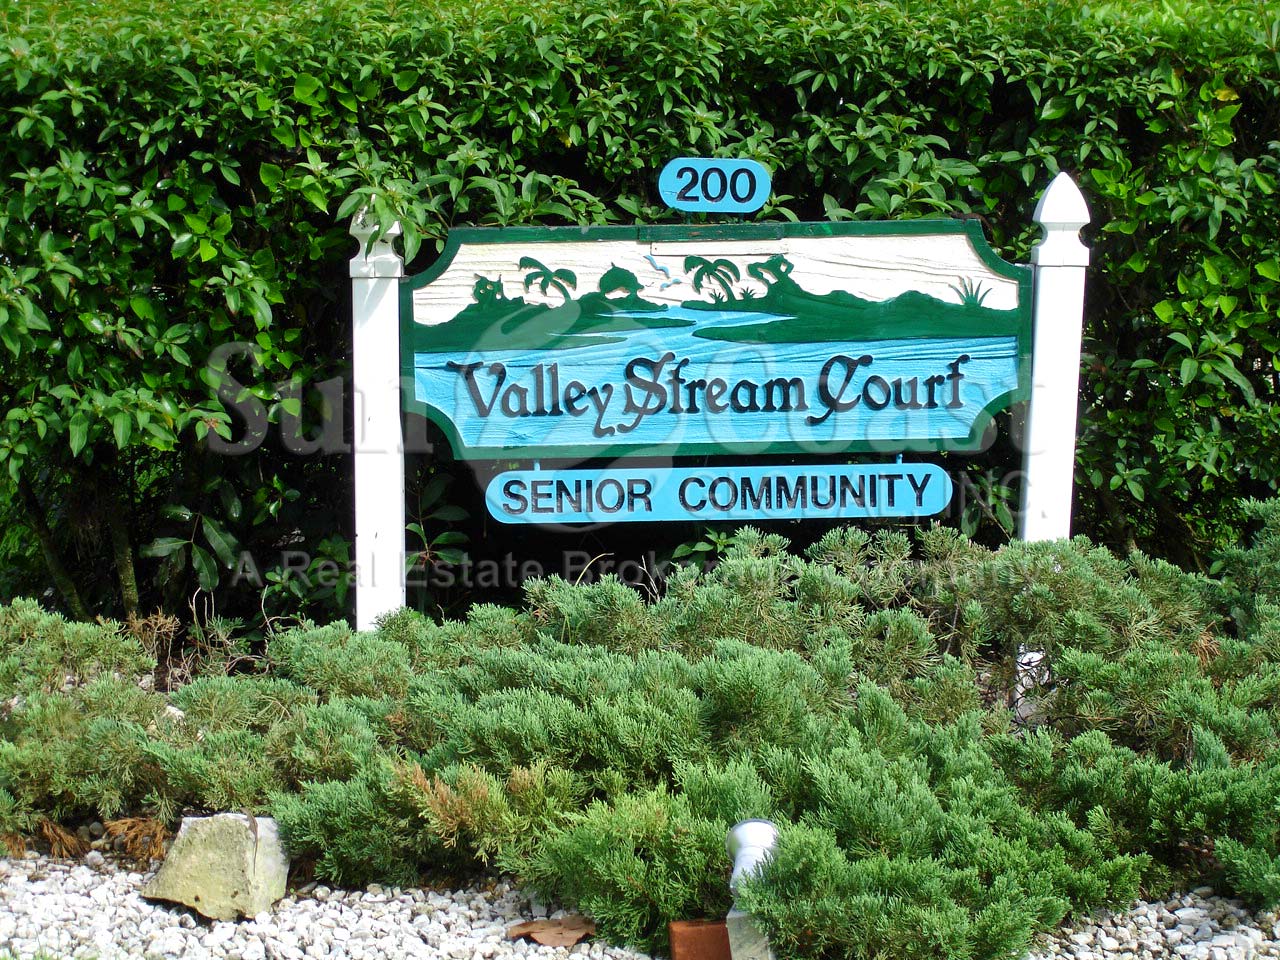 Valley Stream Court Signage